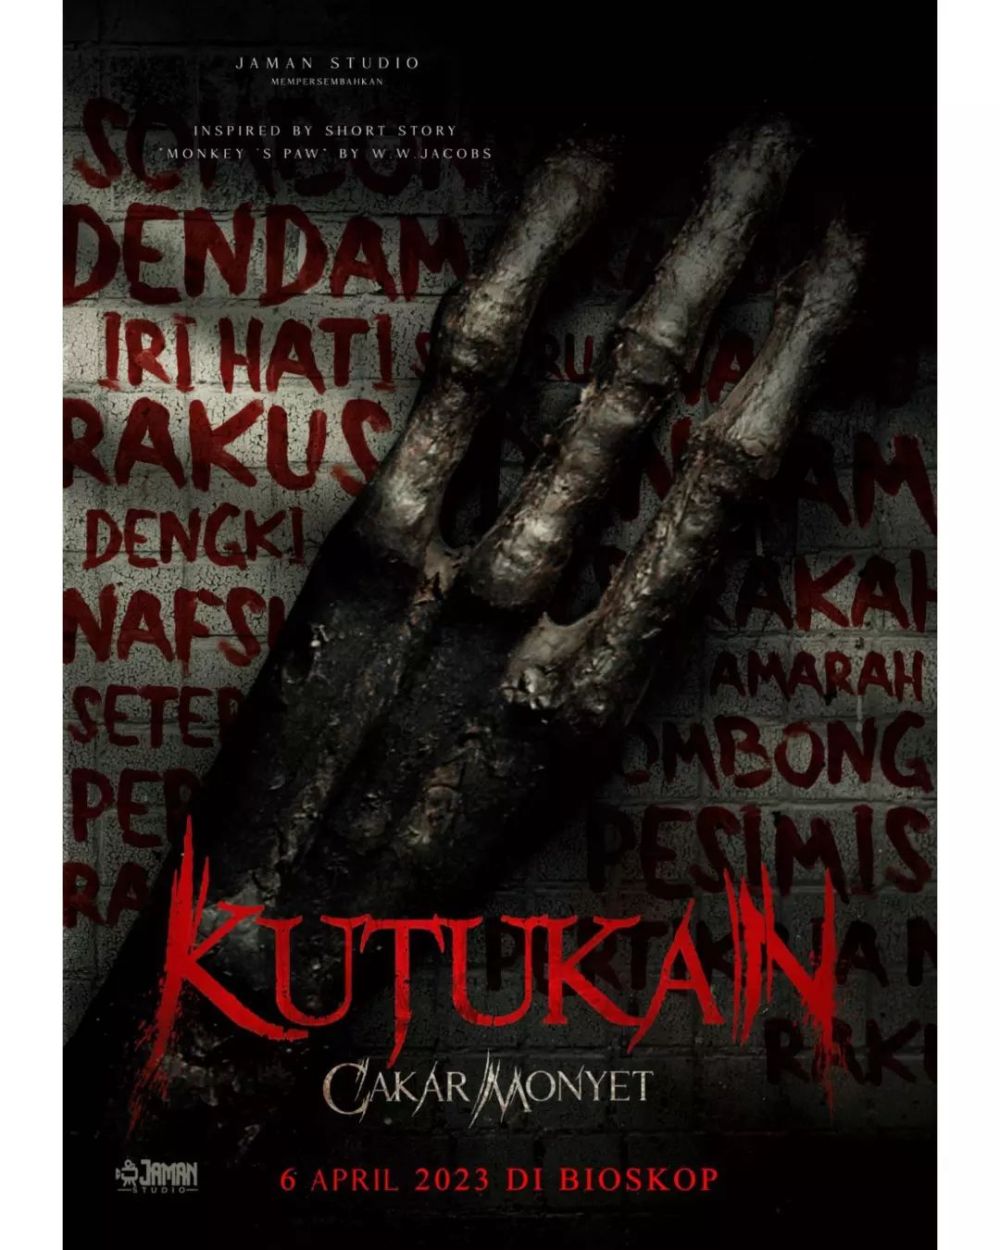 9 Film dan Series Indonesia Tayang April 2023, Wajib Nonton!